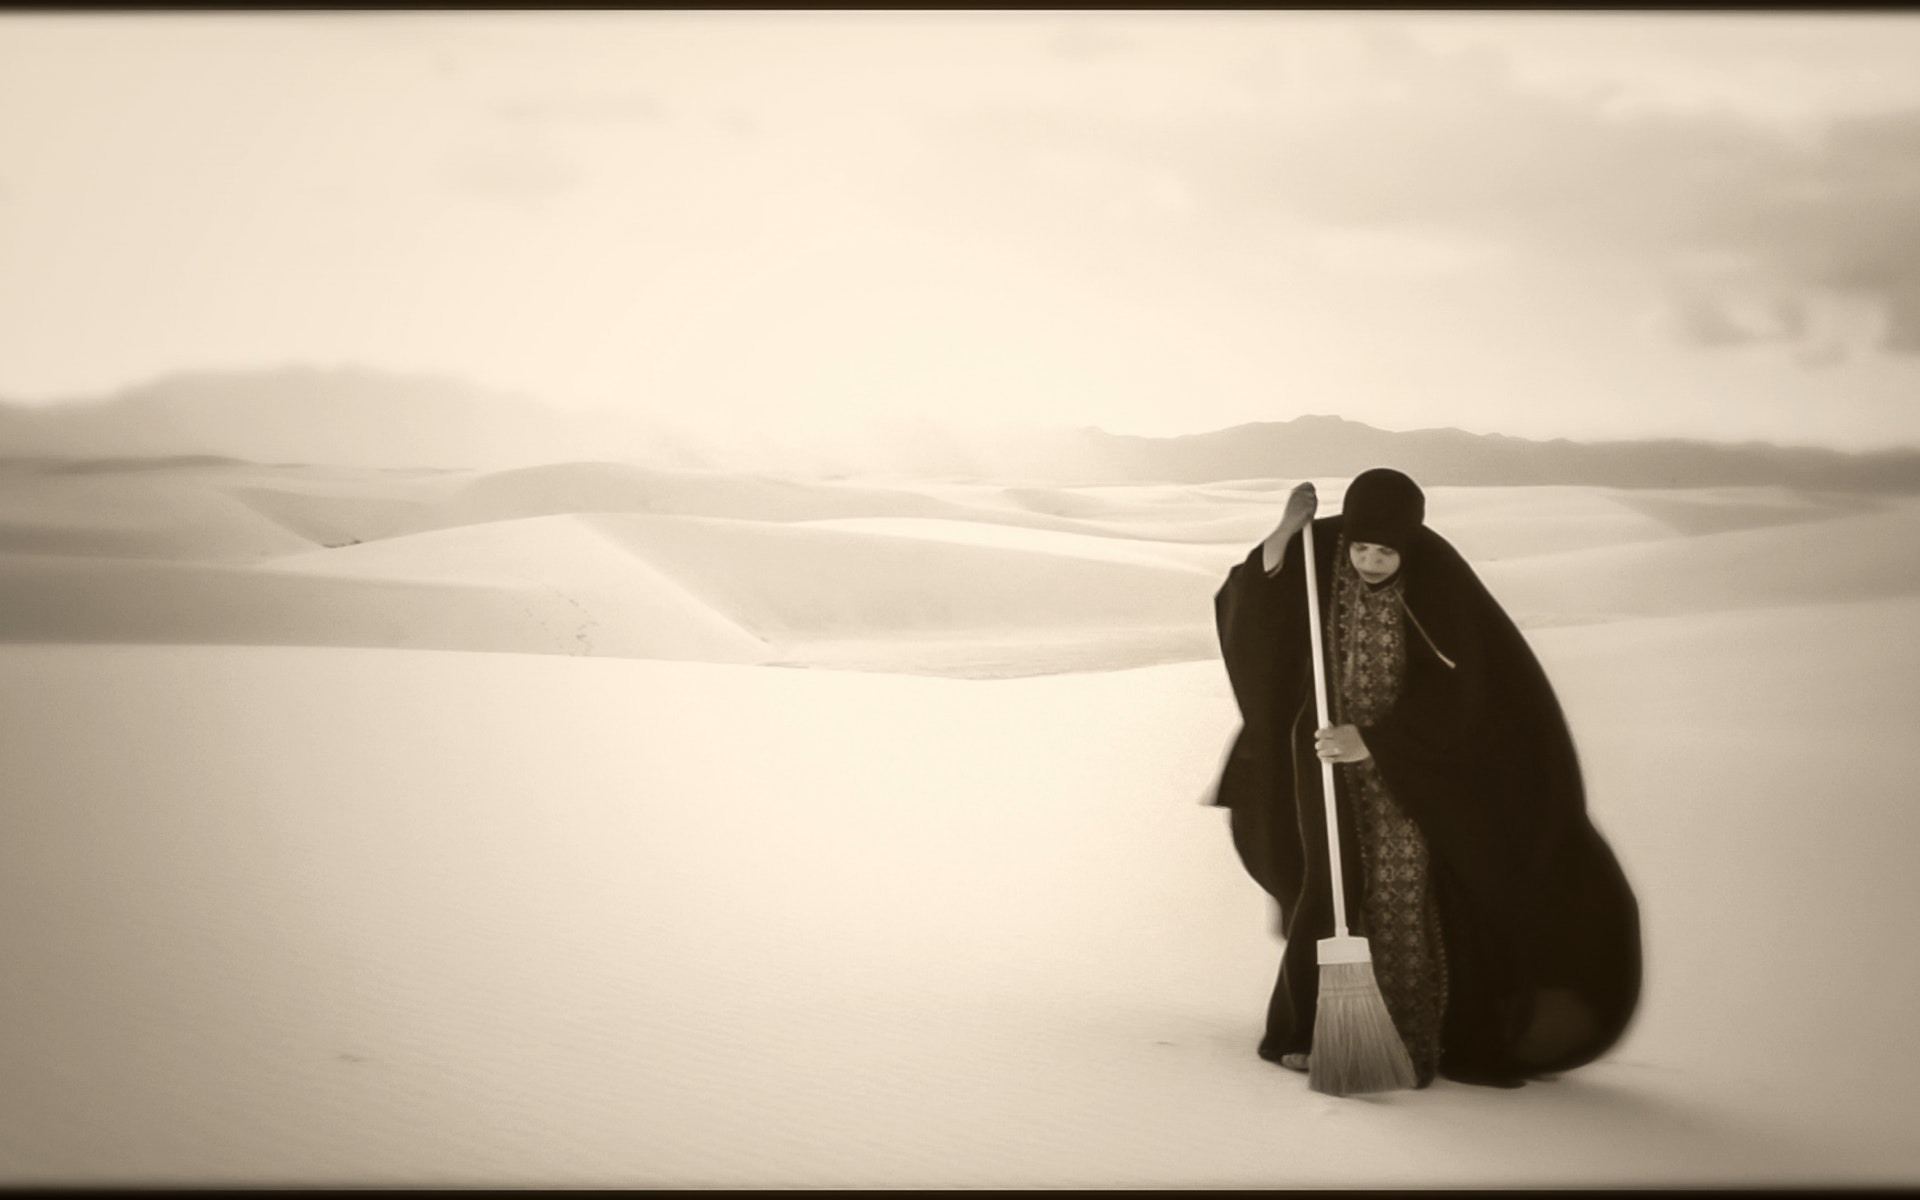 A woman sweeps a vast desert.